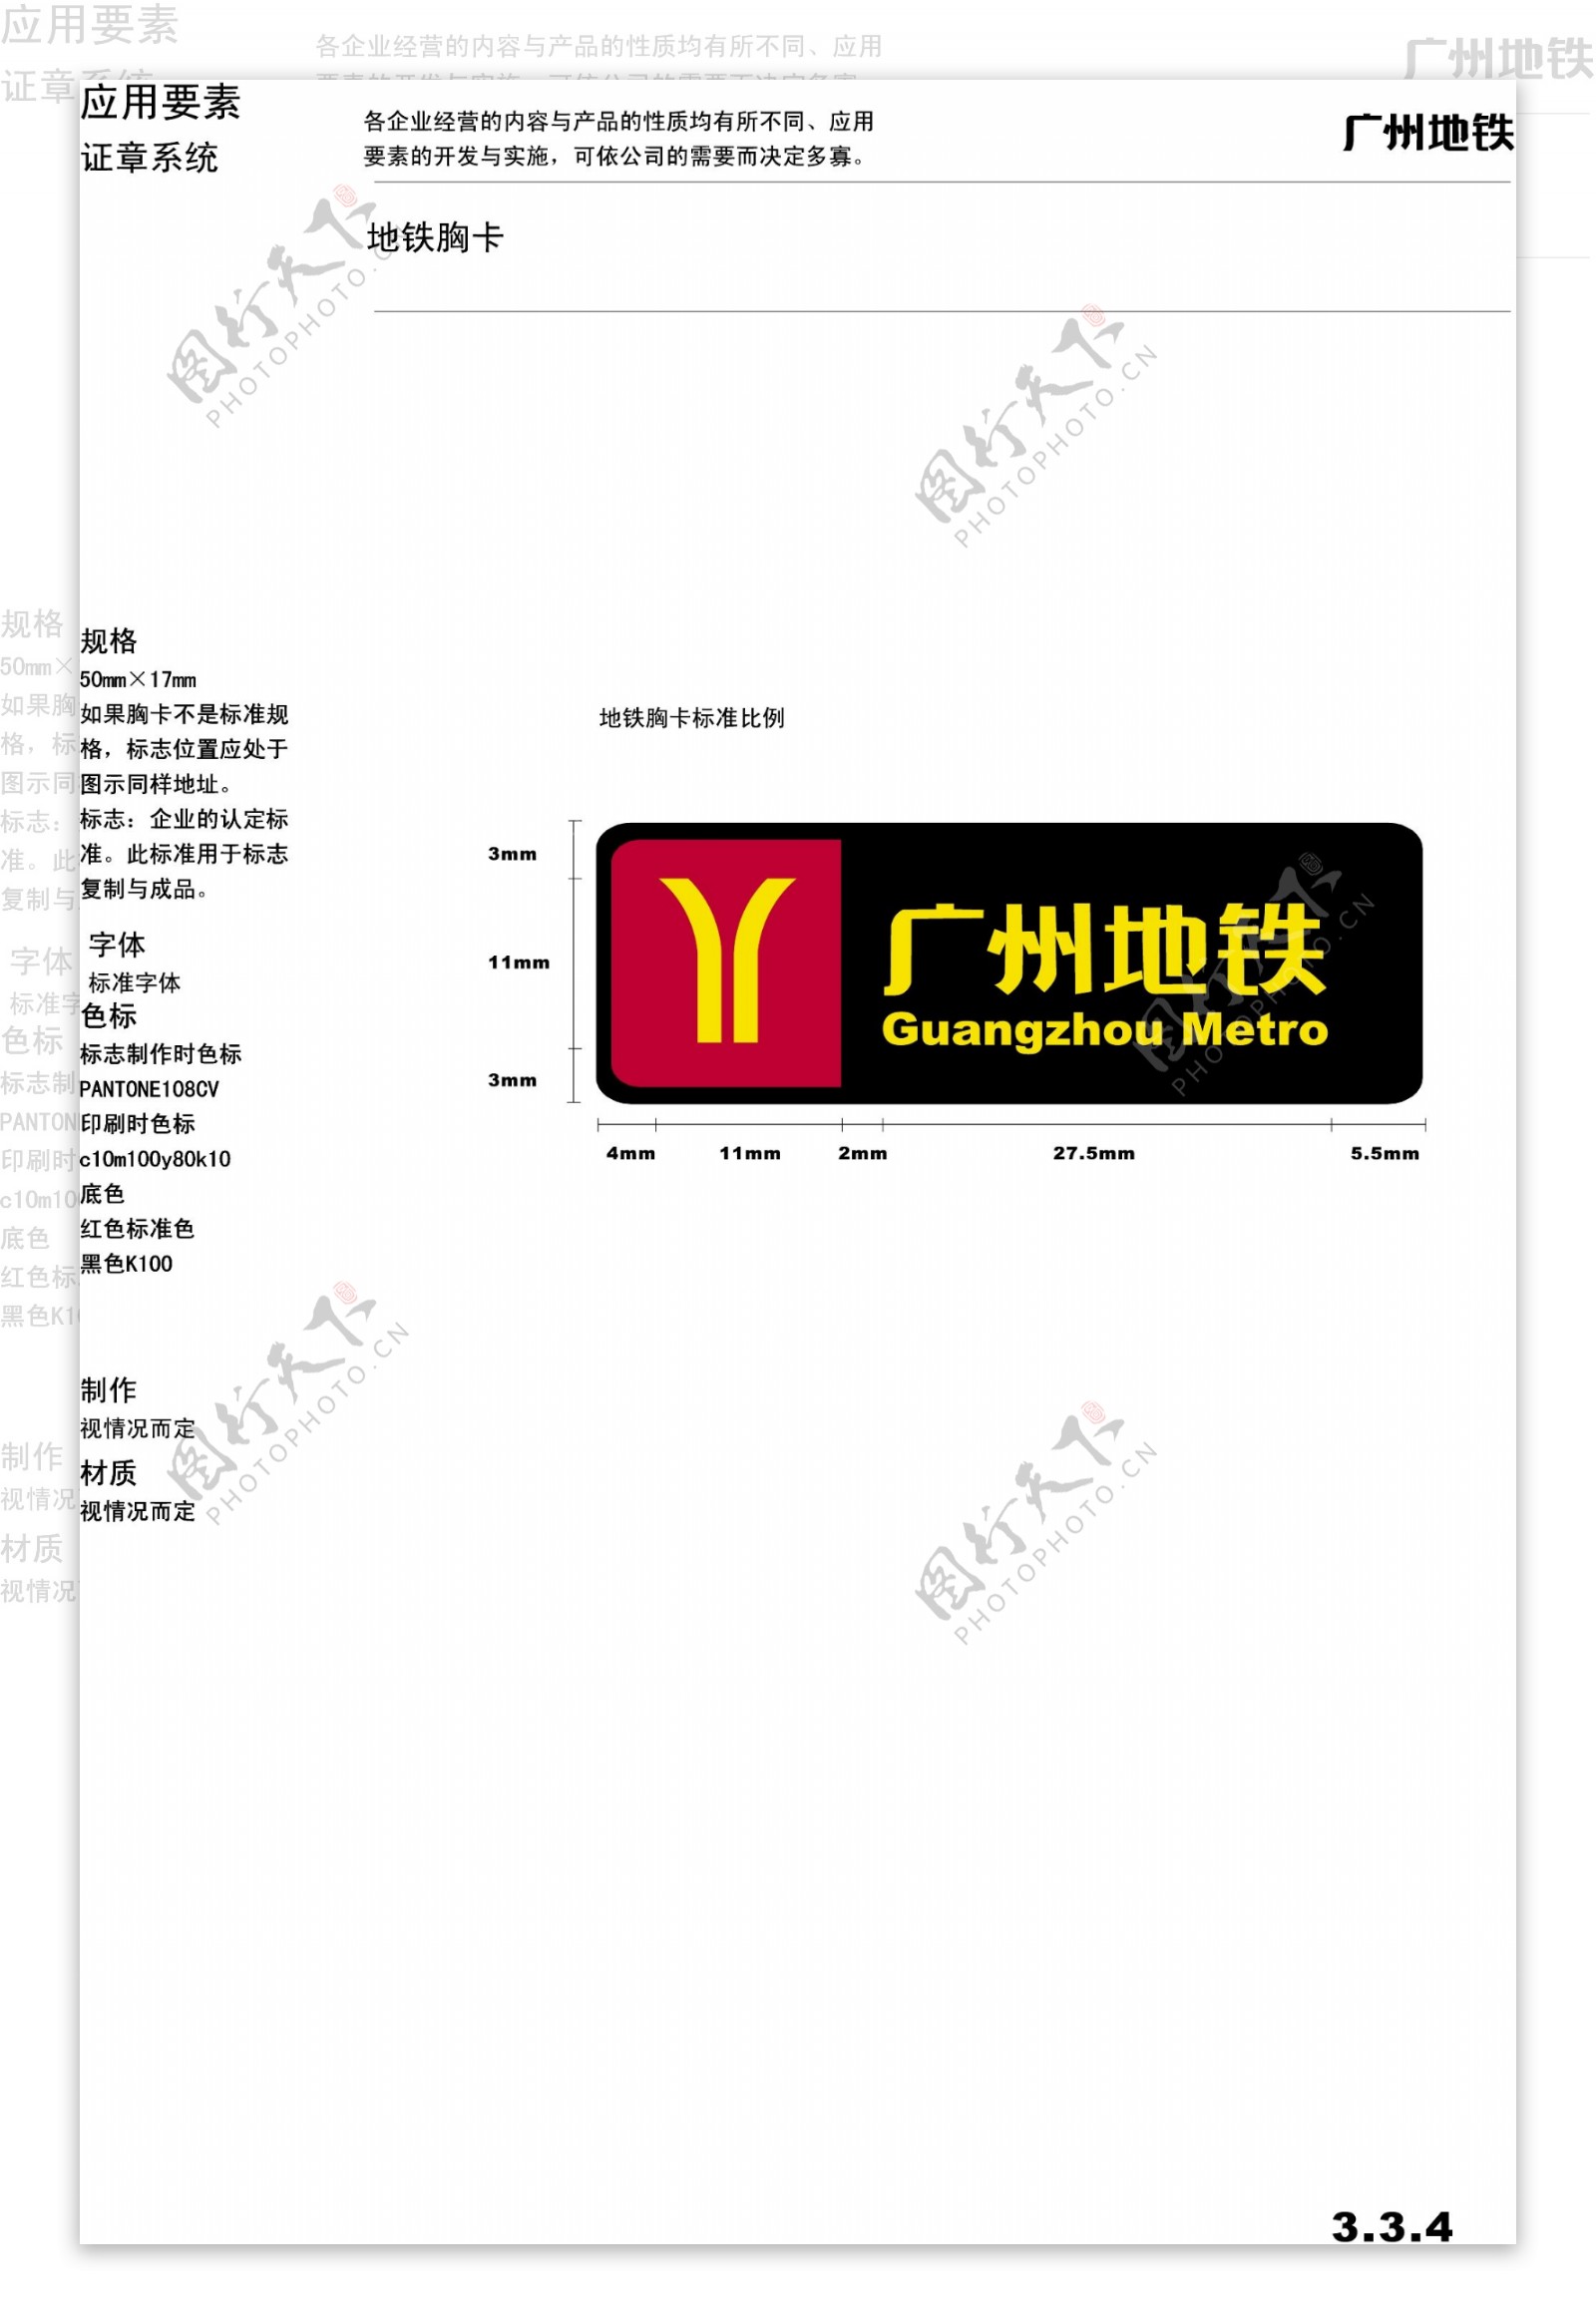 广州地铁VIS矢量CDR文件VI设计VI宝典证章系统